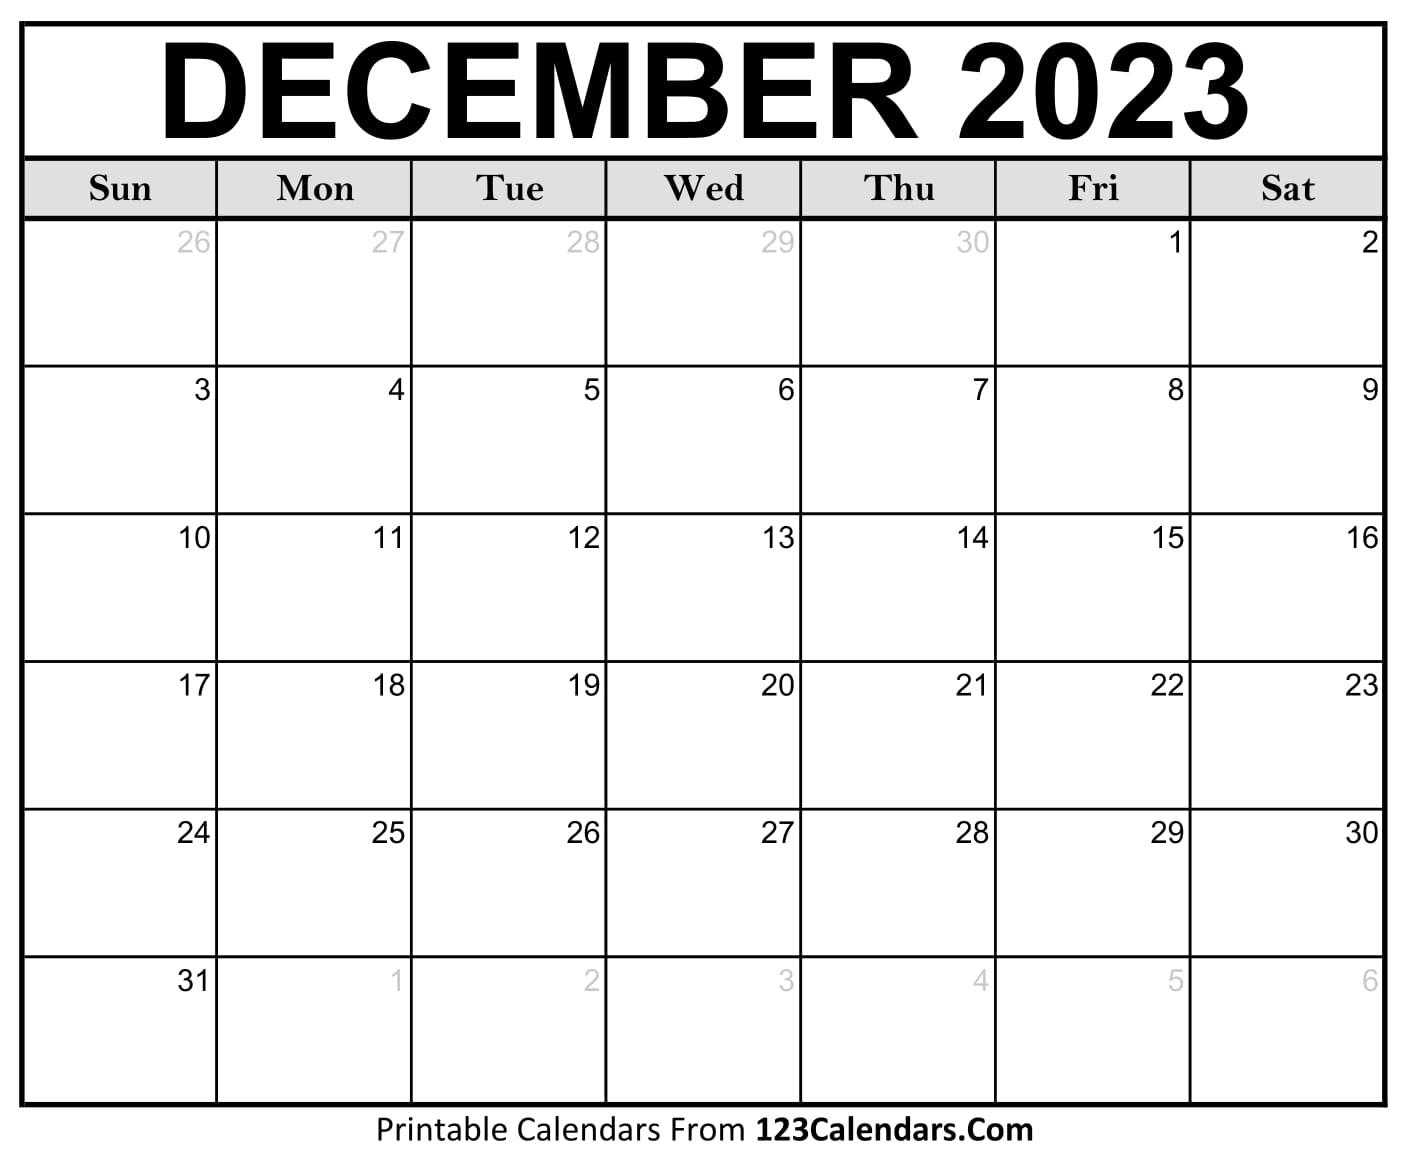 Printable December 2023 Calendar Templates - 123Calendars.com